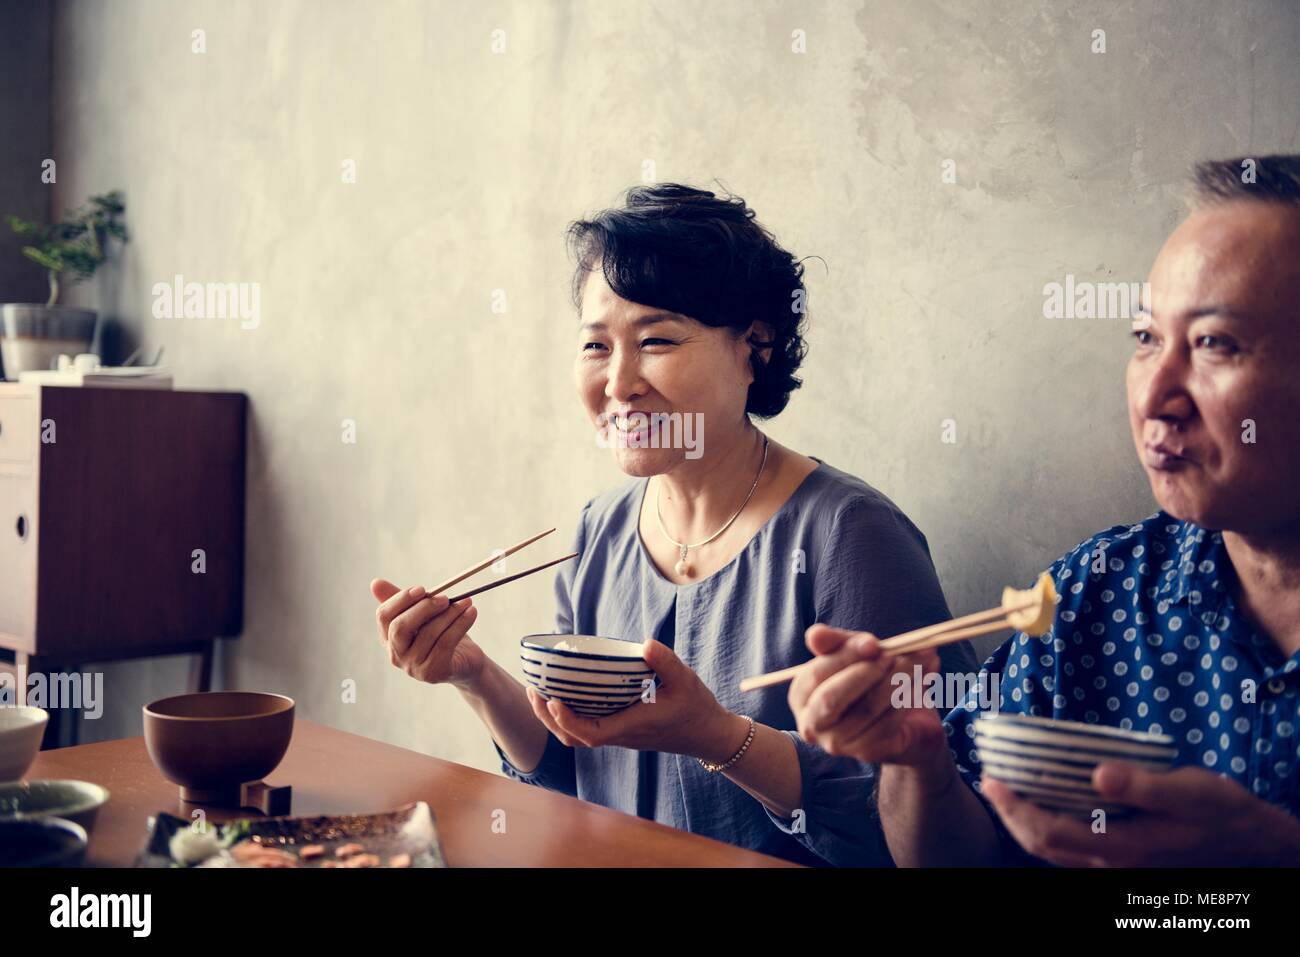 Famiglia giapponese cenare insieme con la felicità Foto Stock